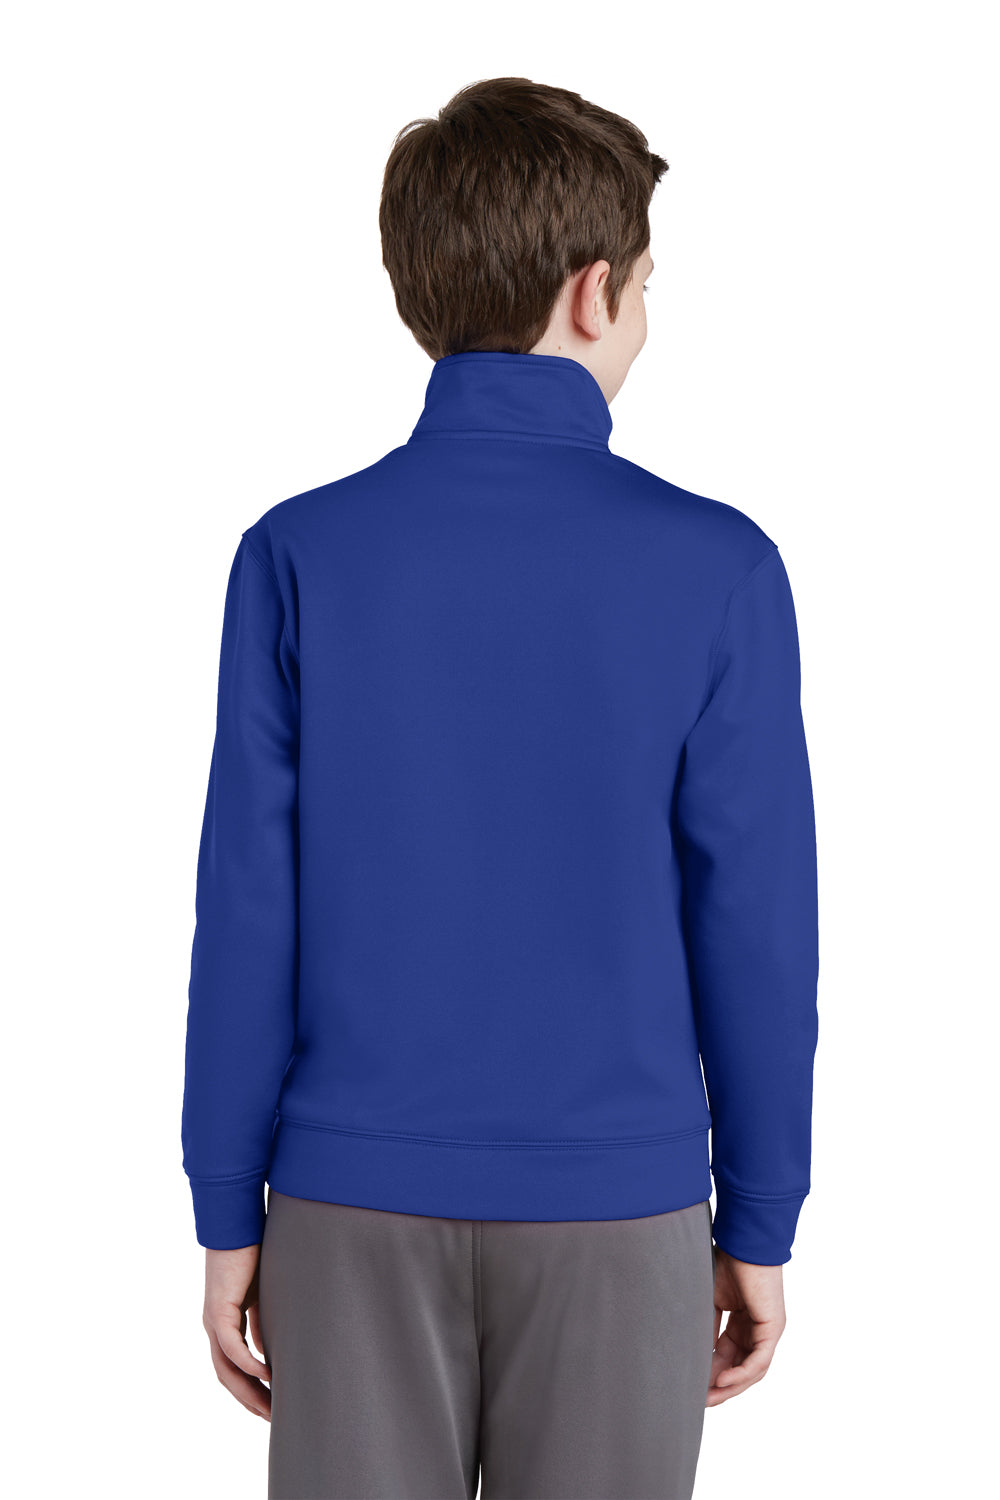 Sport-Tek YST241 Youth Sport-Wick Moisture Wicking Fleece Full Zip Sweatshirt Royal Blue Back